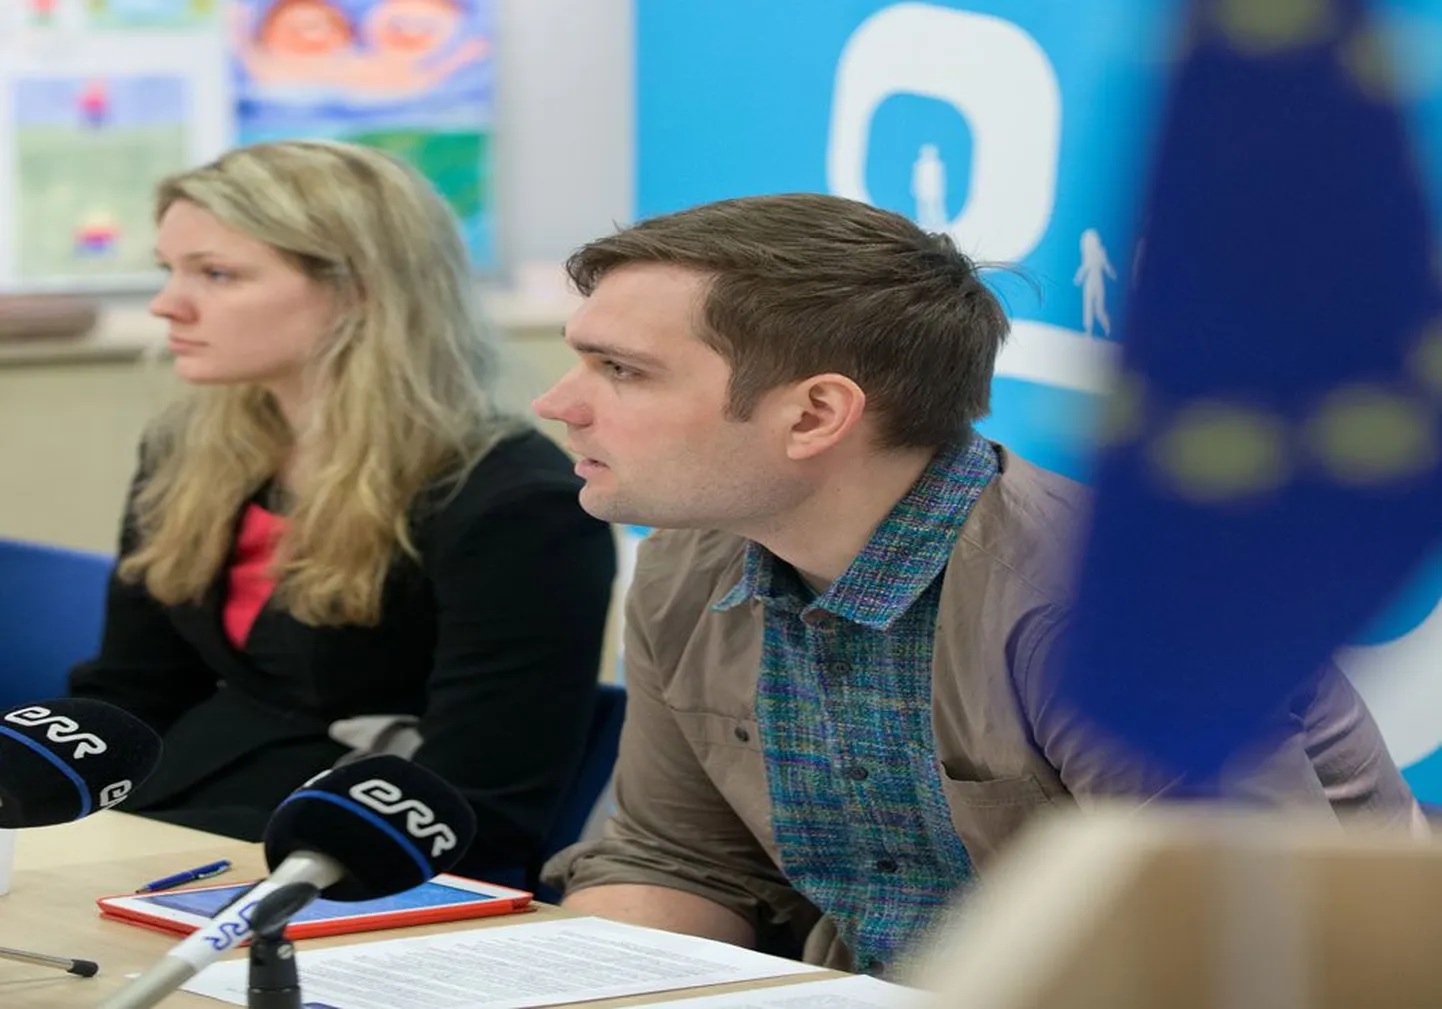 Правовой эксперт Анни Сяэр и руководитель Центра по правам человека Кари Кяcпер признают, что повышение градуса терпимости в обществе Эстонии происходит с трудом.